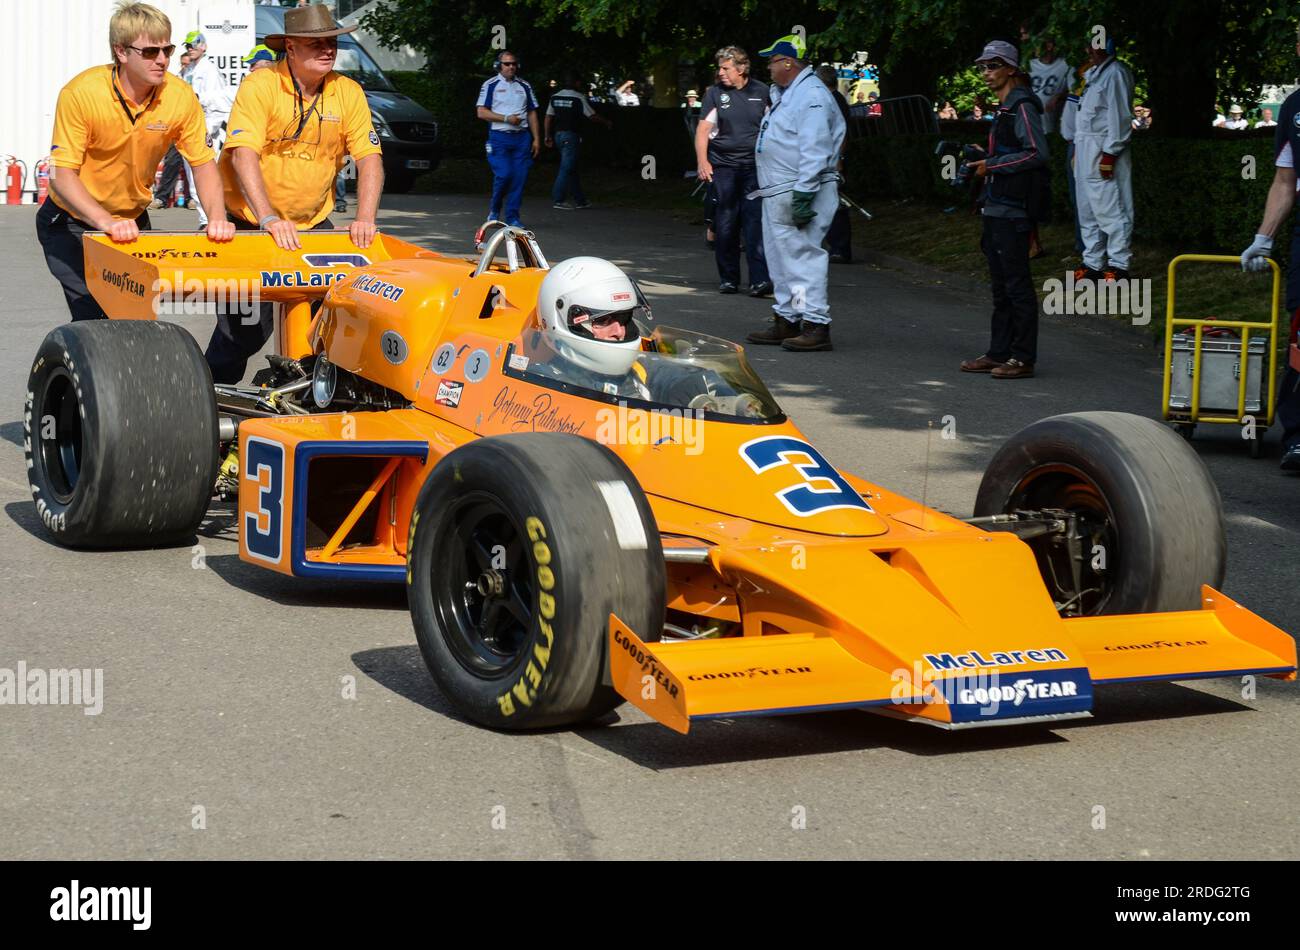 McLaren M16 avant la montée de la colline au Goodwood Festival of Speed 2013. Voiture dans laquelle Johnny Rutherford a remporté les 500 Indianapolis 1974 Banque D'Images